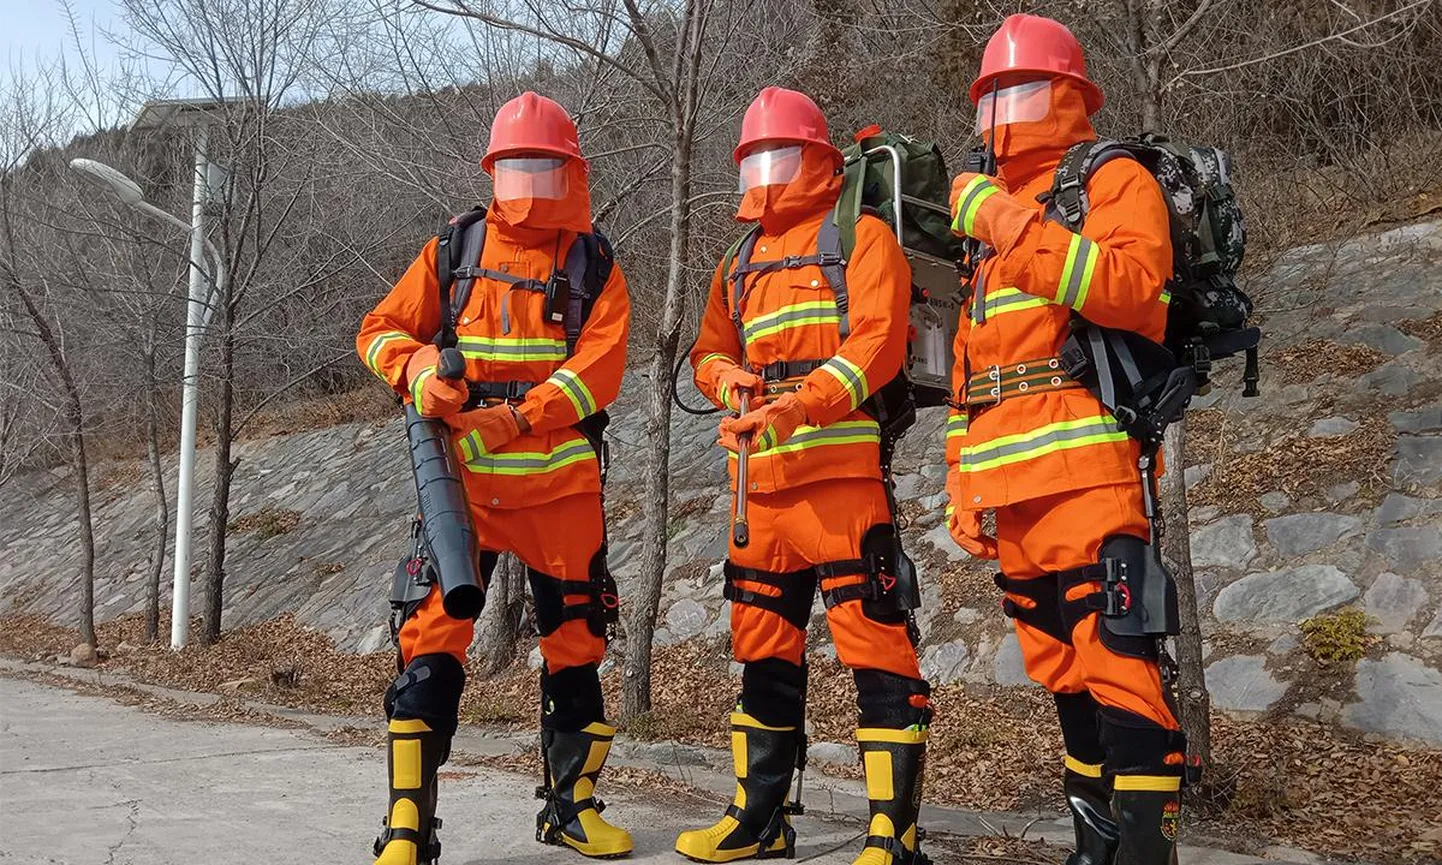 Hiina tuletõrjujad kergete süsinikmaterjalist välis-skelettidega.